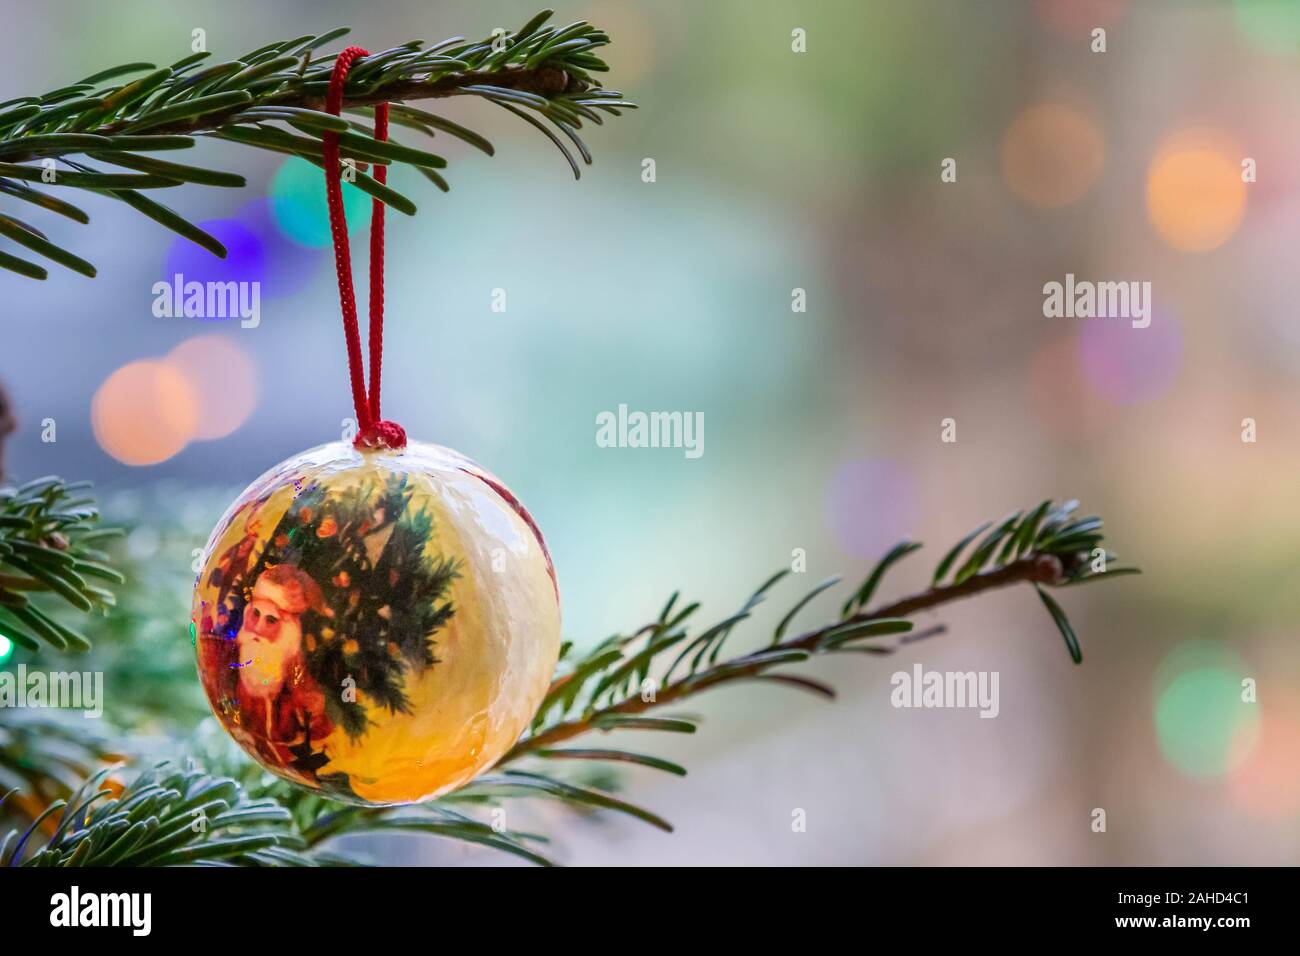 Solo adornos hechos a mano colgando de la rama de un árbol de Navidad con luces de hadas fuera de foco en el fondo Foto de stock